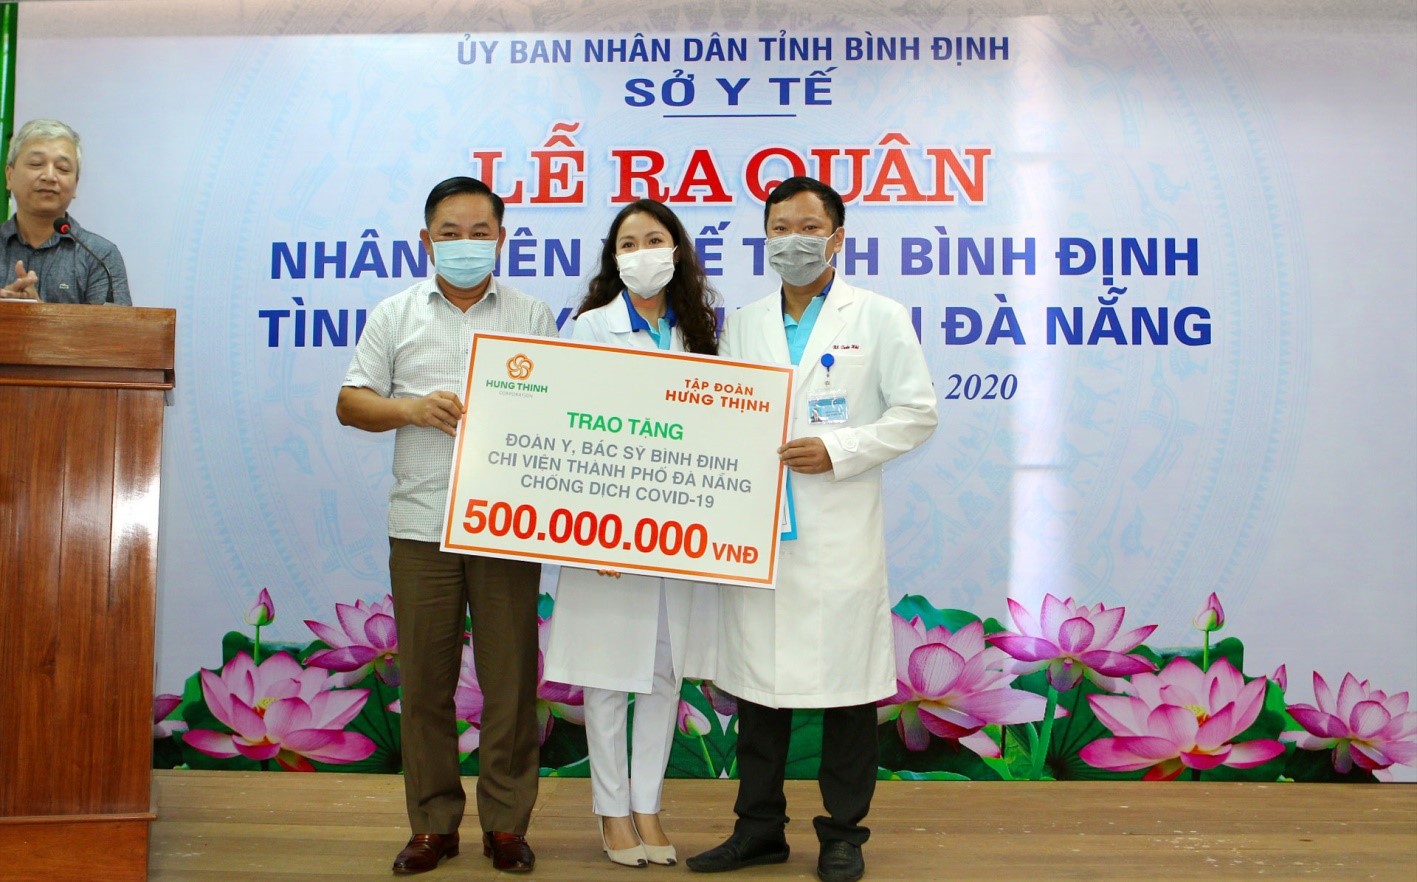 Ông Nguyễn Hữu Sang (bên trái) đại diện Tập đoàn Hưng Thịnh trao tặng 500 triệu đồng cho đoàn y, bác sĩ Bình Định chi viện TP. Đà Nẵng